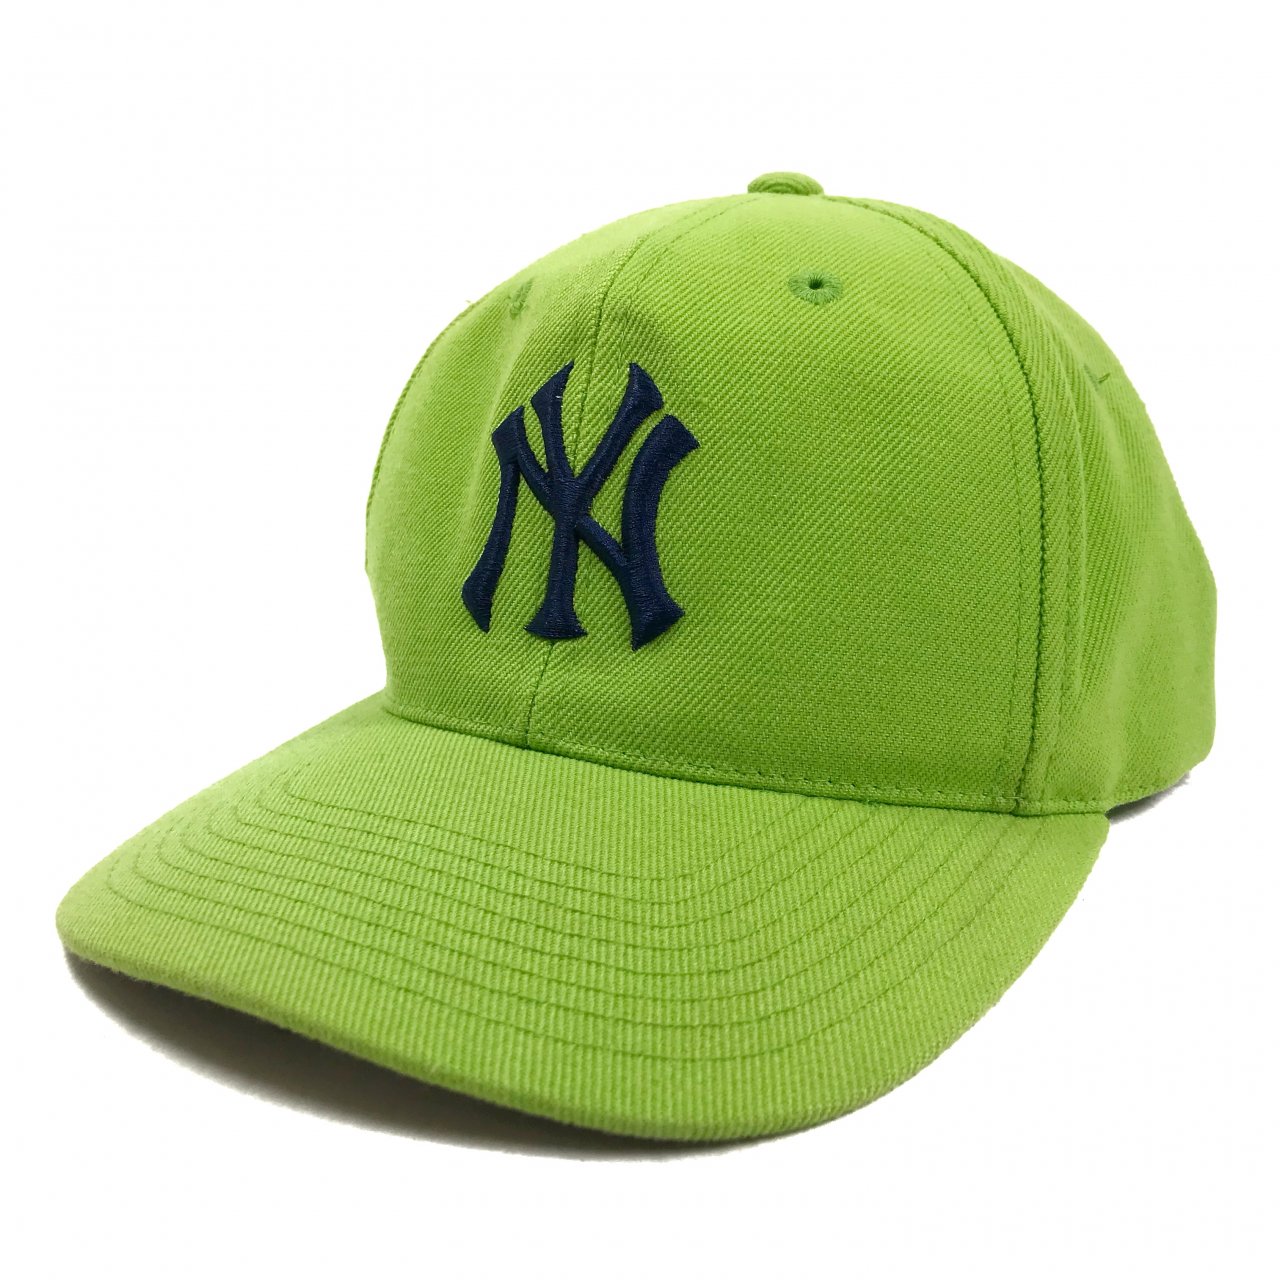 Newyork Yankees Logo 6 Panel Cap 黄緑 Mlb ニューヨーク ヤンキース ロゴ 刺繍 6パネル キャップ ライムグリーン ツバ裏グレー スナップバック Newjoke Online Store